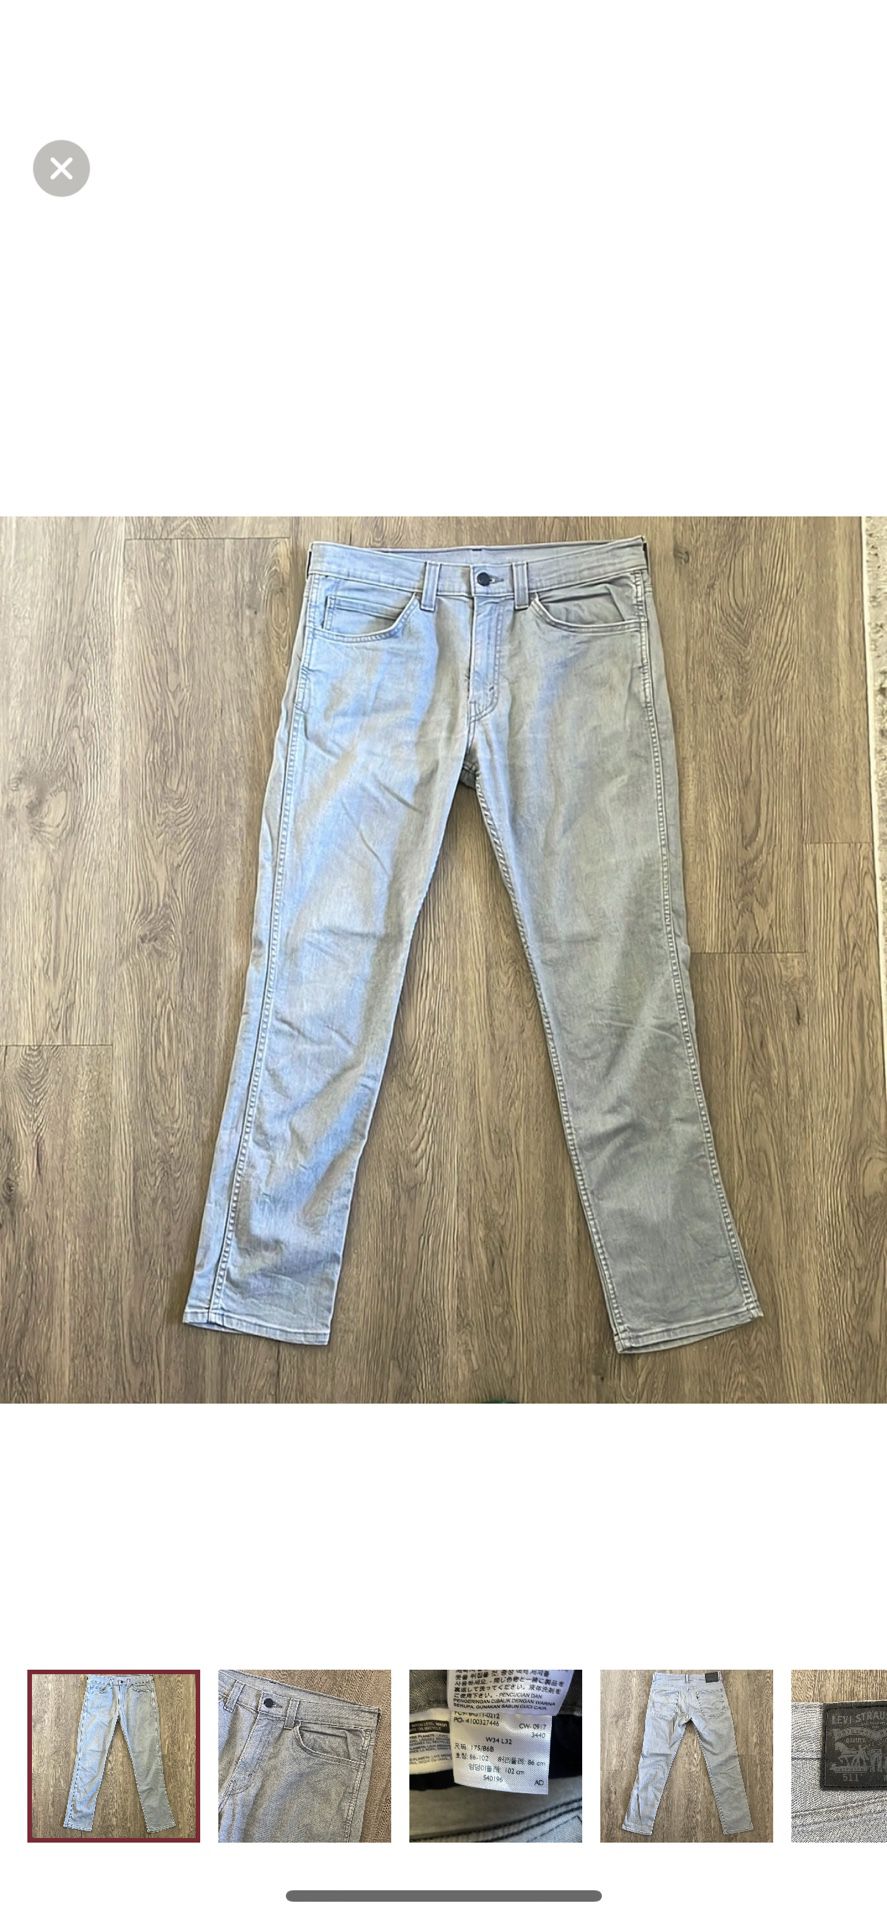 Gray Slim Fit 511 Jeans 34W x 32L 